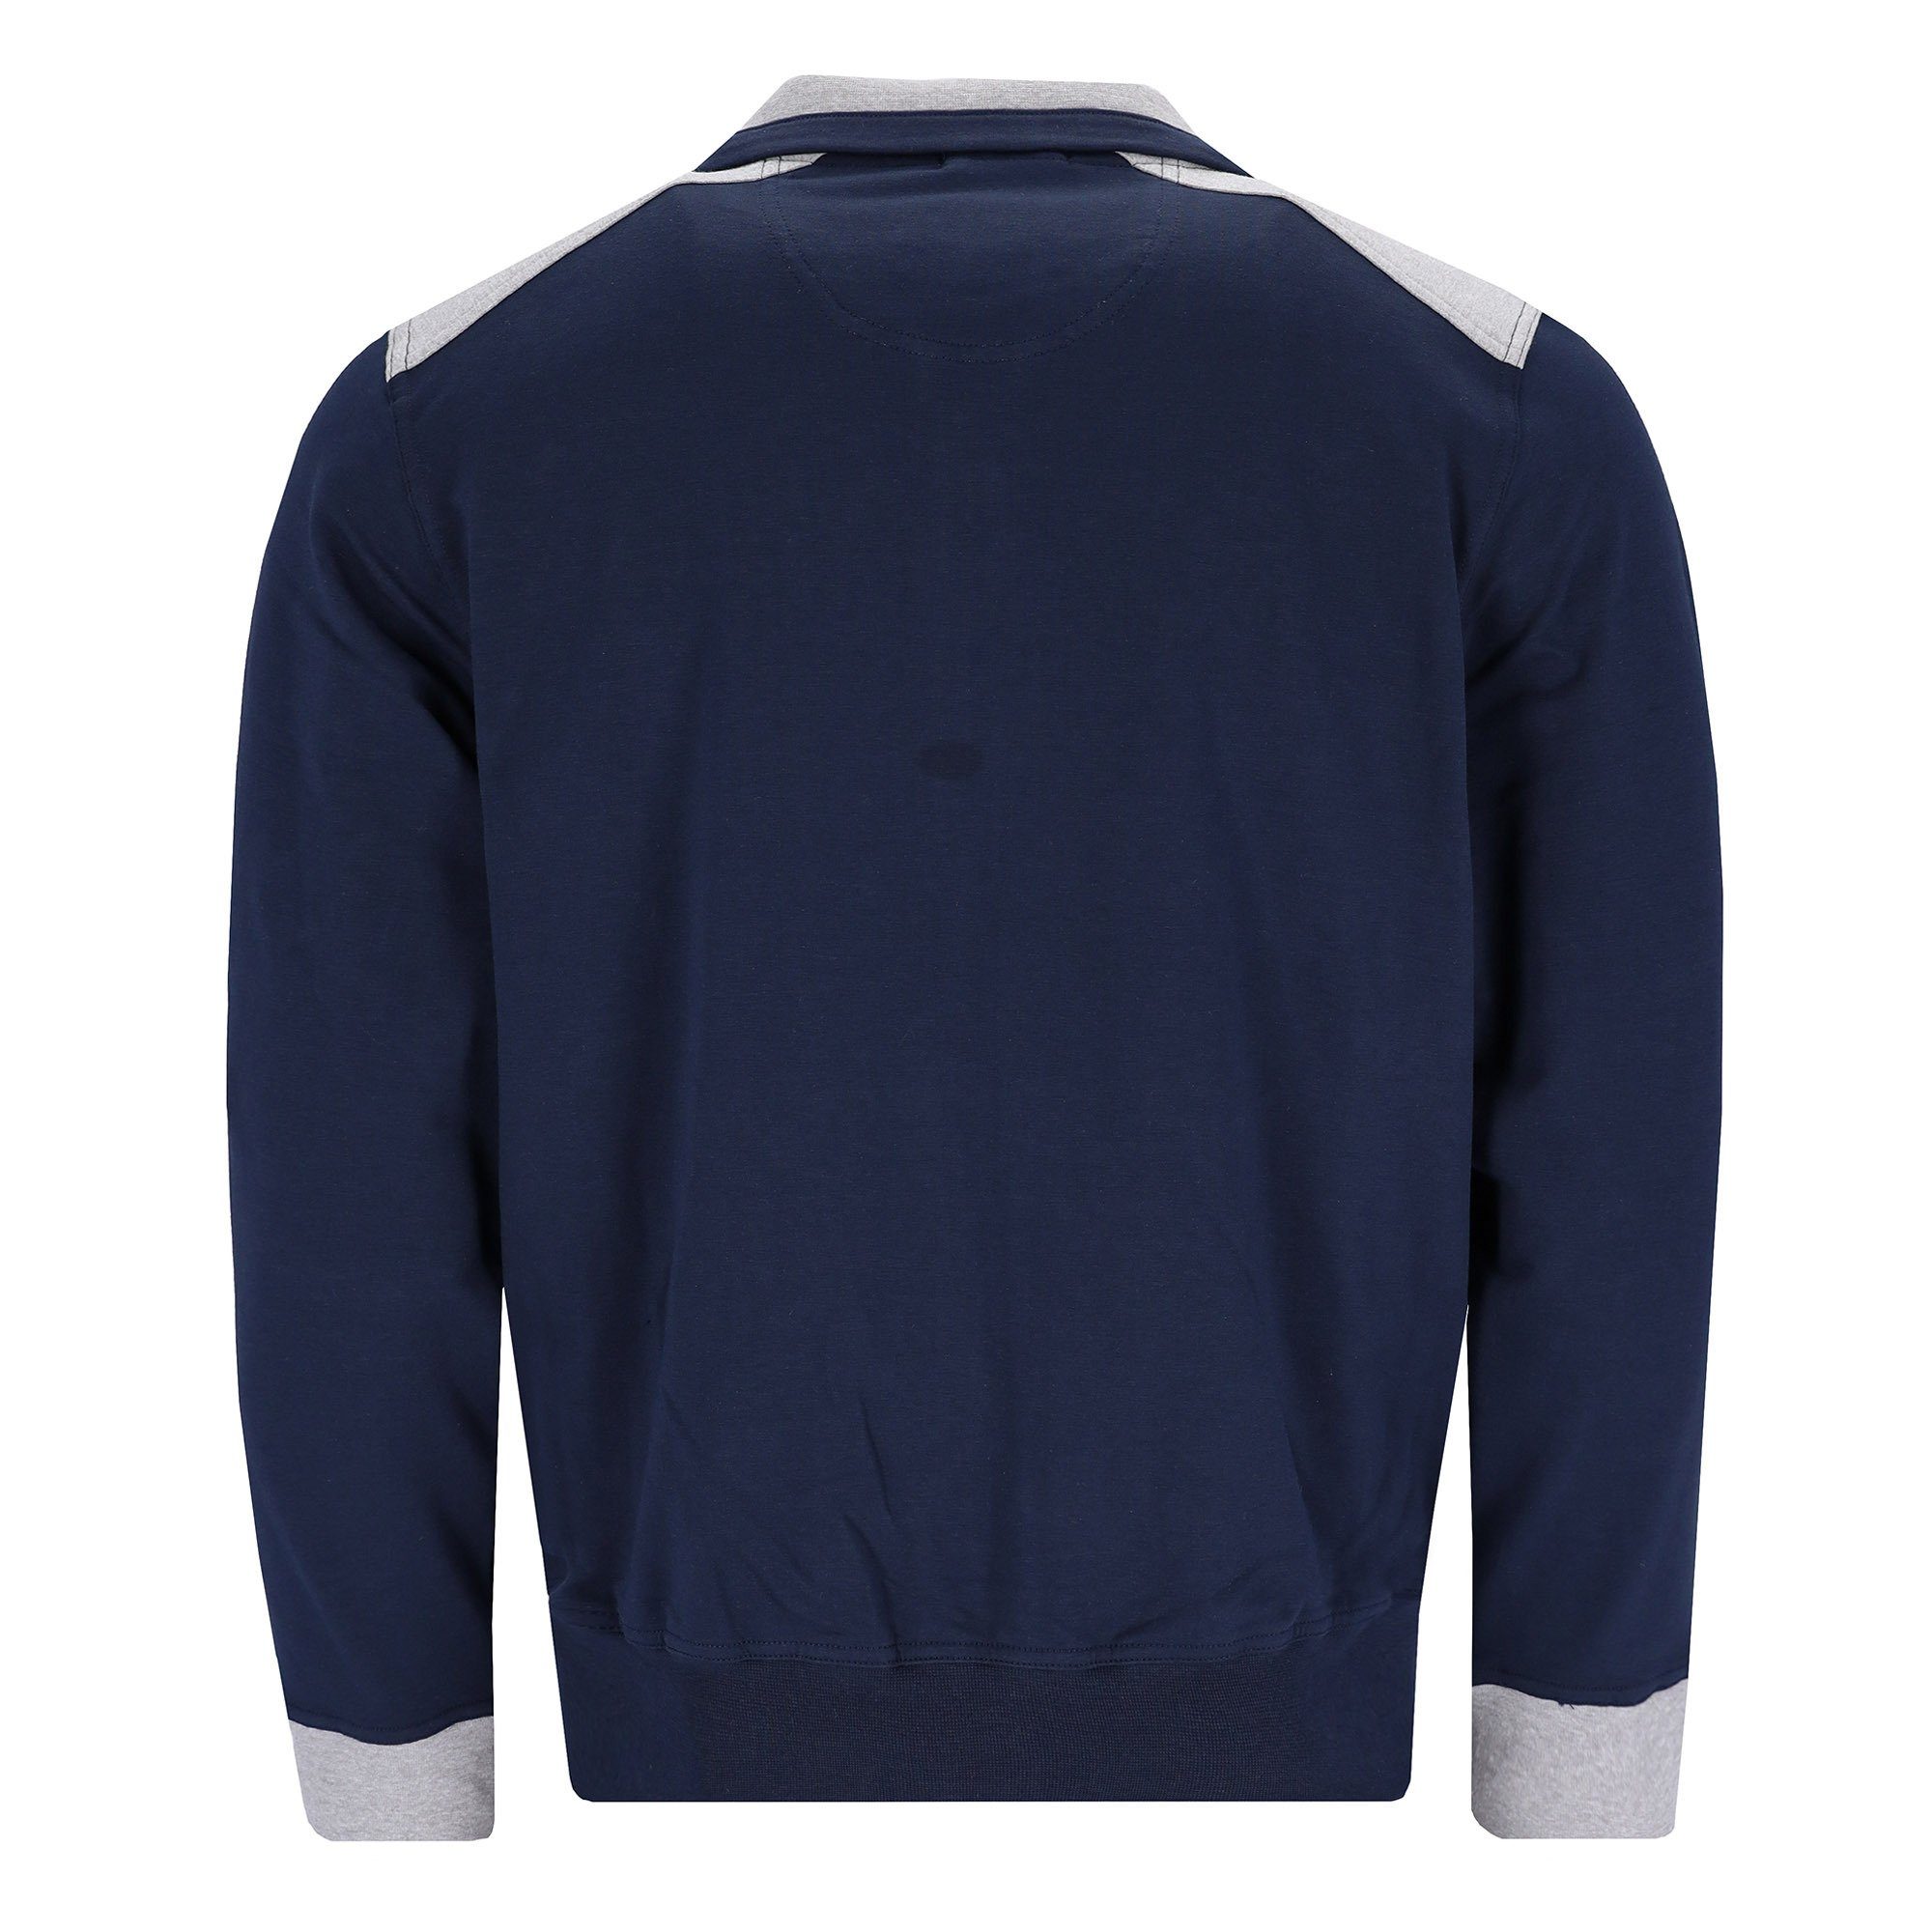 Freizeit, Herren Hajo Blau Homewear Jacke Sweatshirt - Klima-Komfort